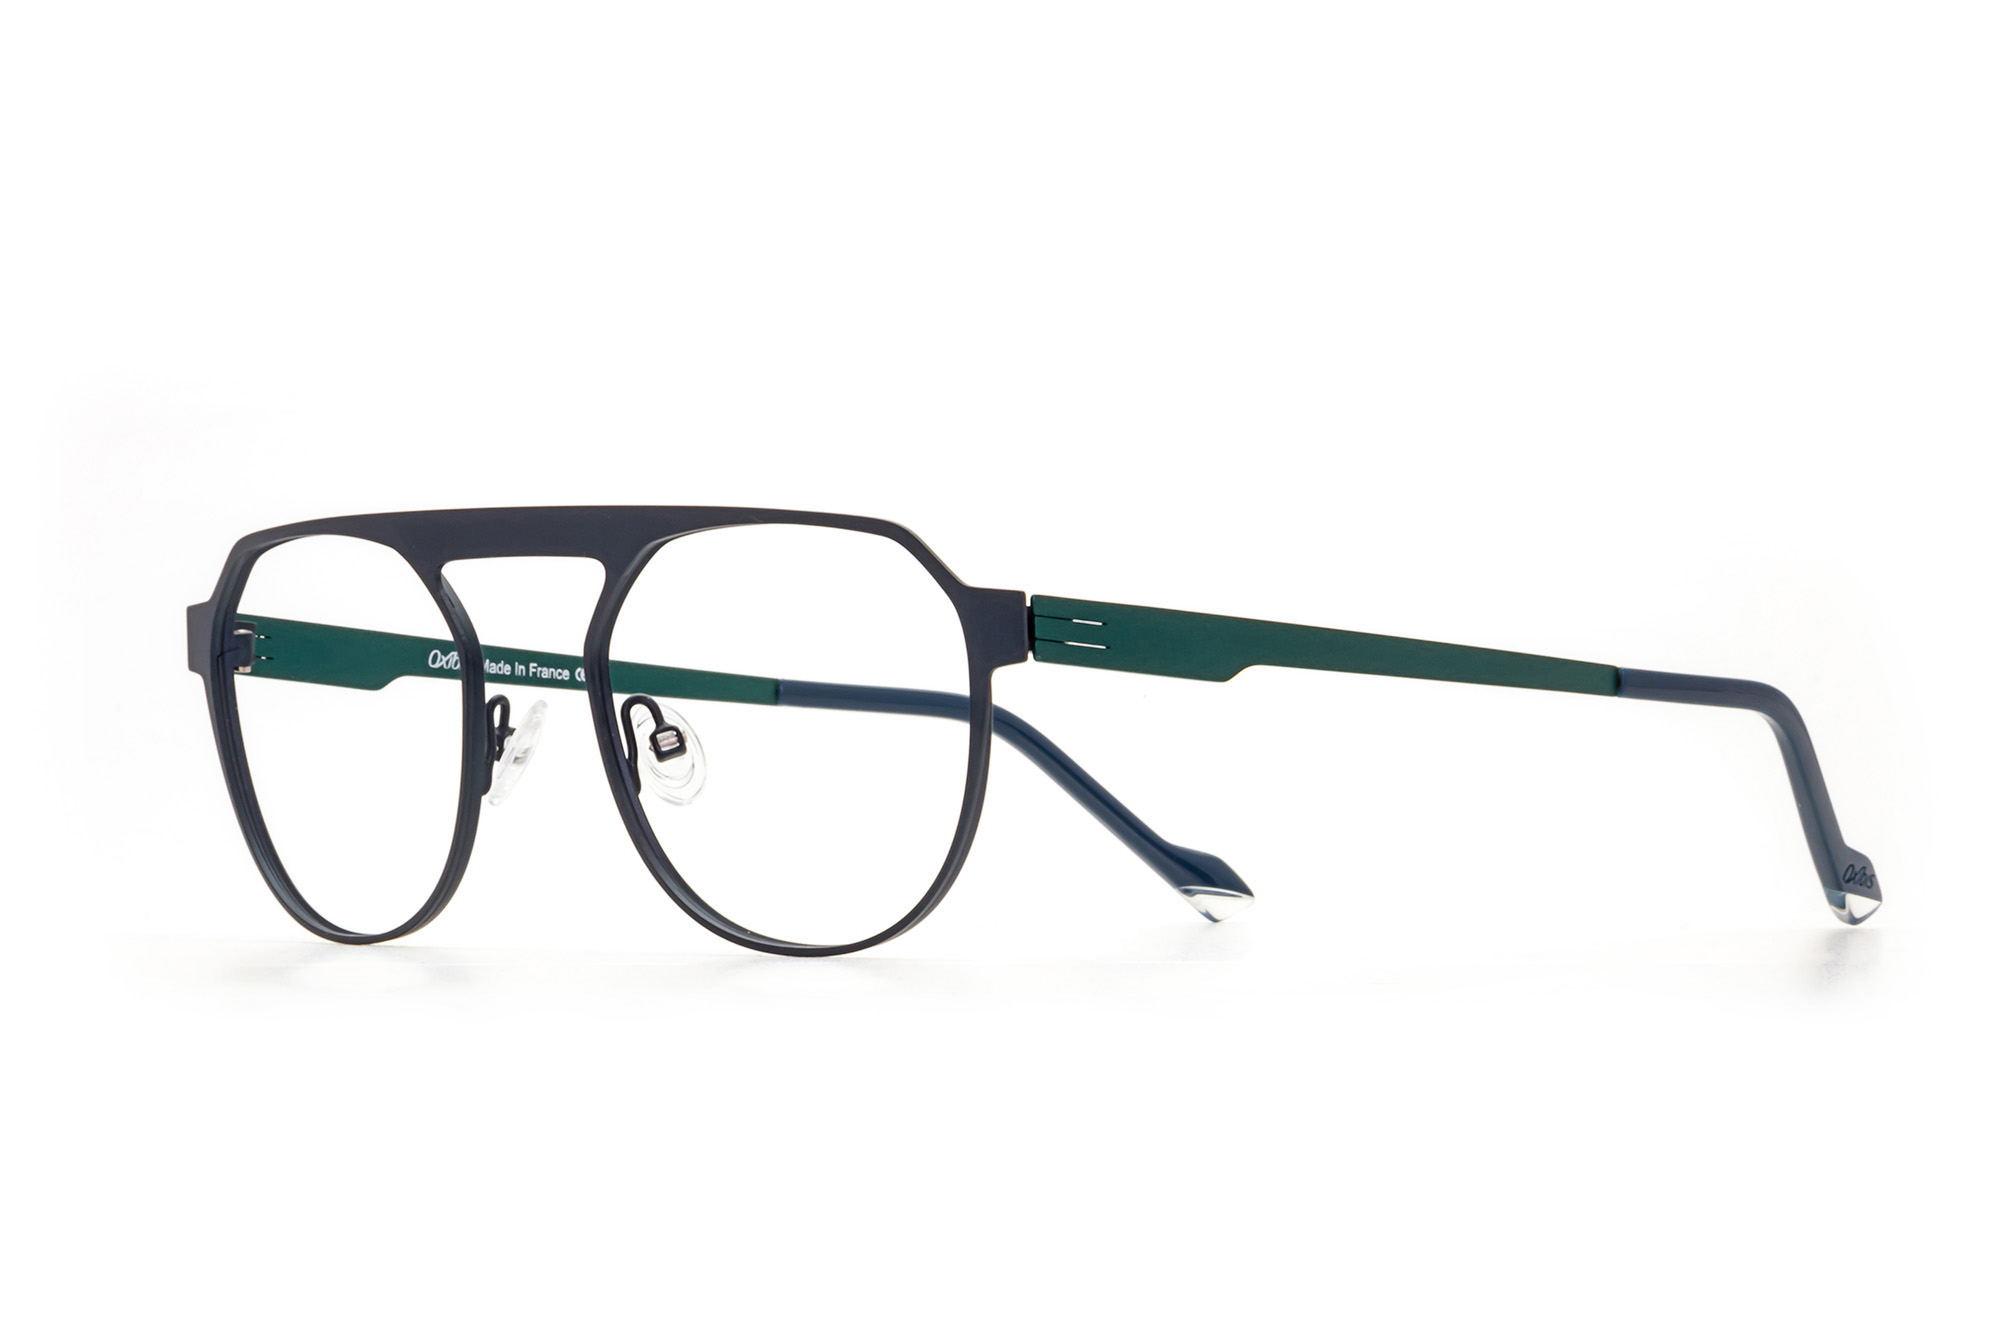 Kullanıma hazır optik tarzda işlenmiş camları ve optik uyumlu çerçevesiyle Oxibis Punchy PN4C2 orta ekartman mavi-yeşil ve lacivert renkli damla model unisex gözlüğü optisyen veya gözlükçülerin sunacağı numarasız veya numaralı cam özelleştirmeleriyle size en yakın gözlükçüden satın alabilirsiniz.